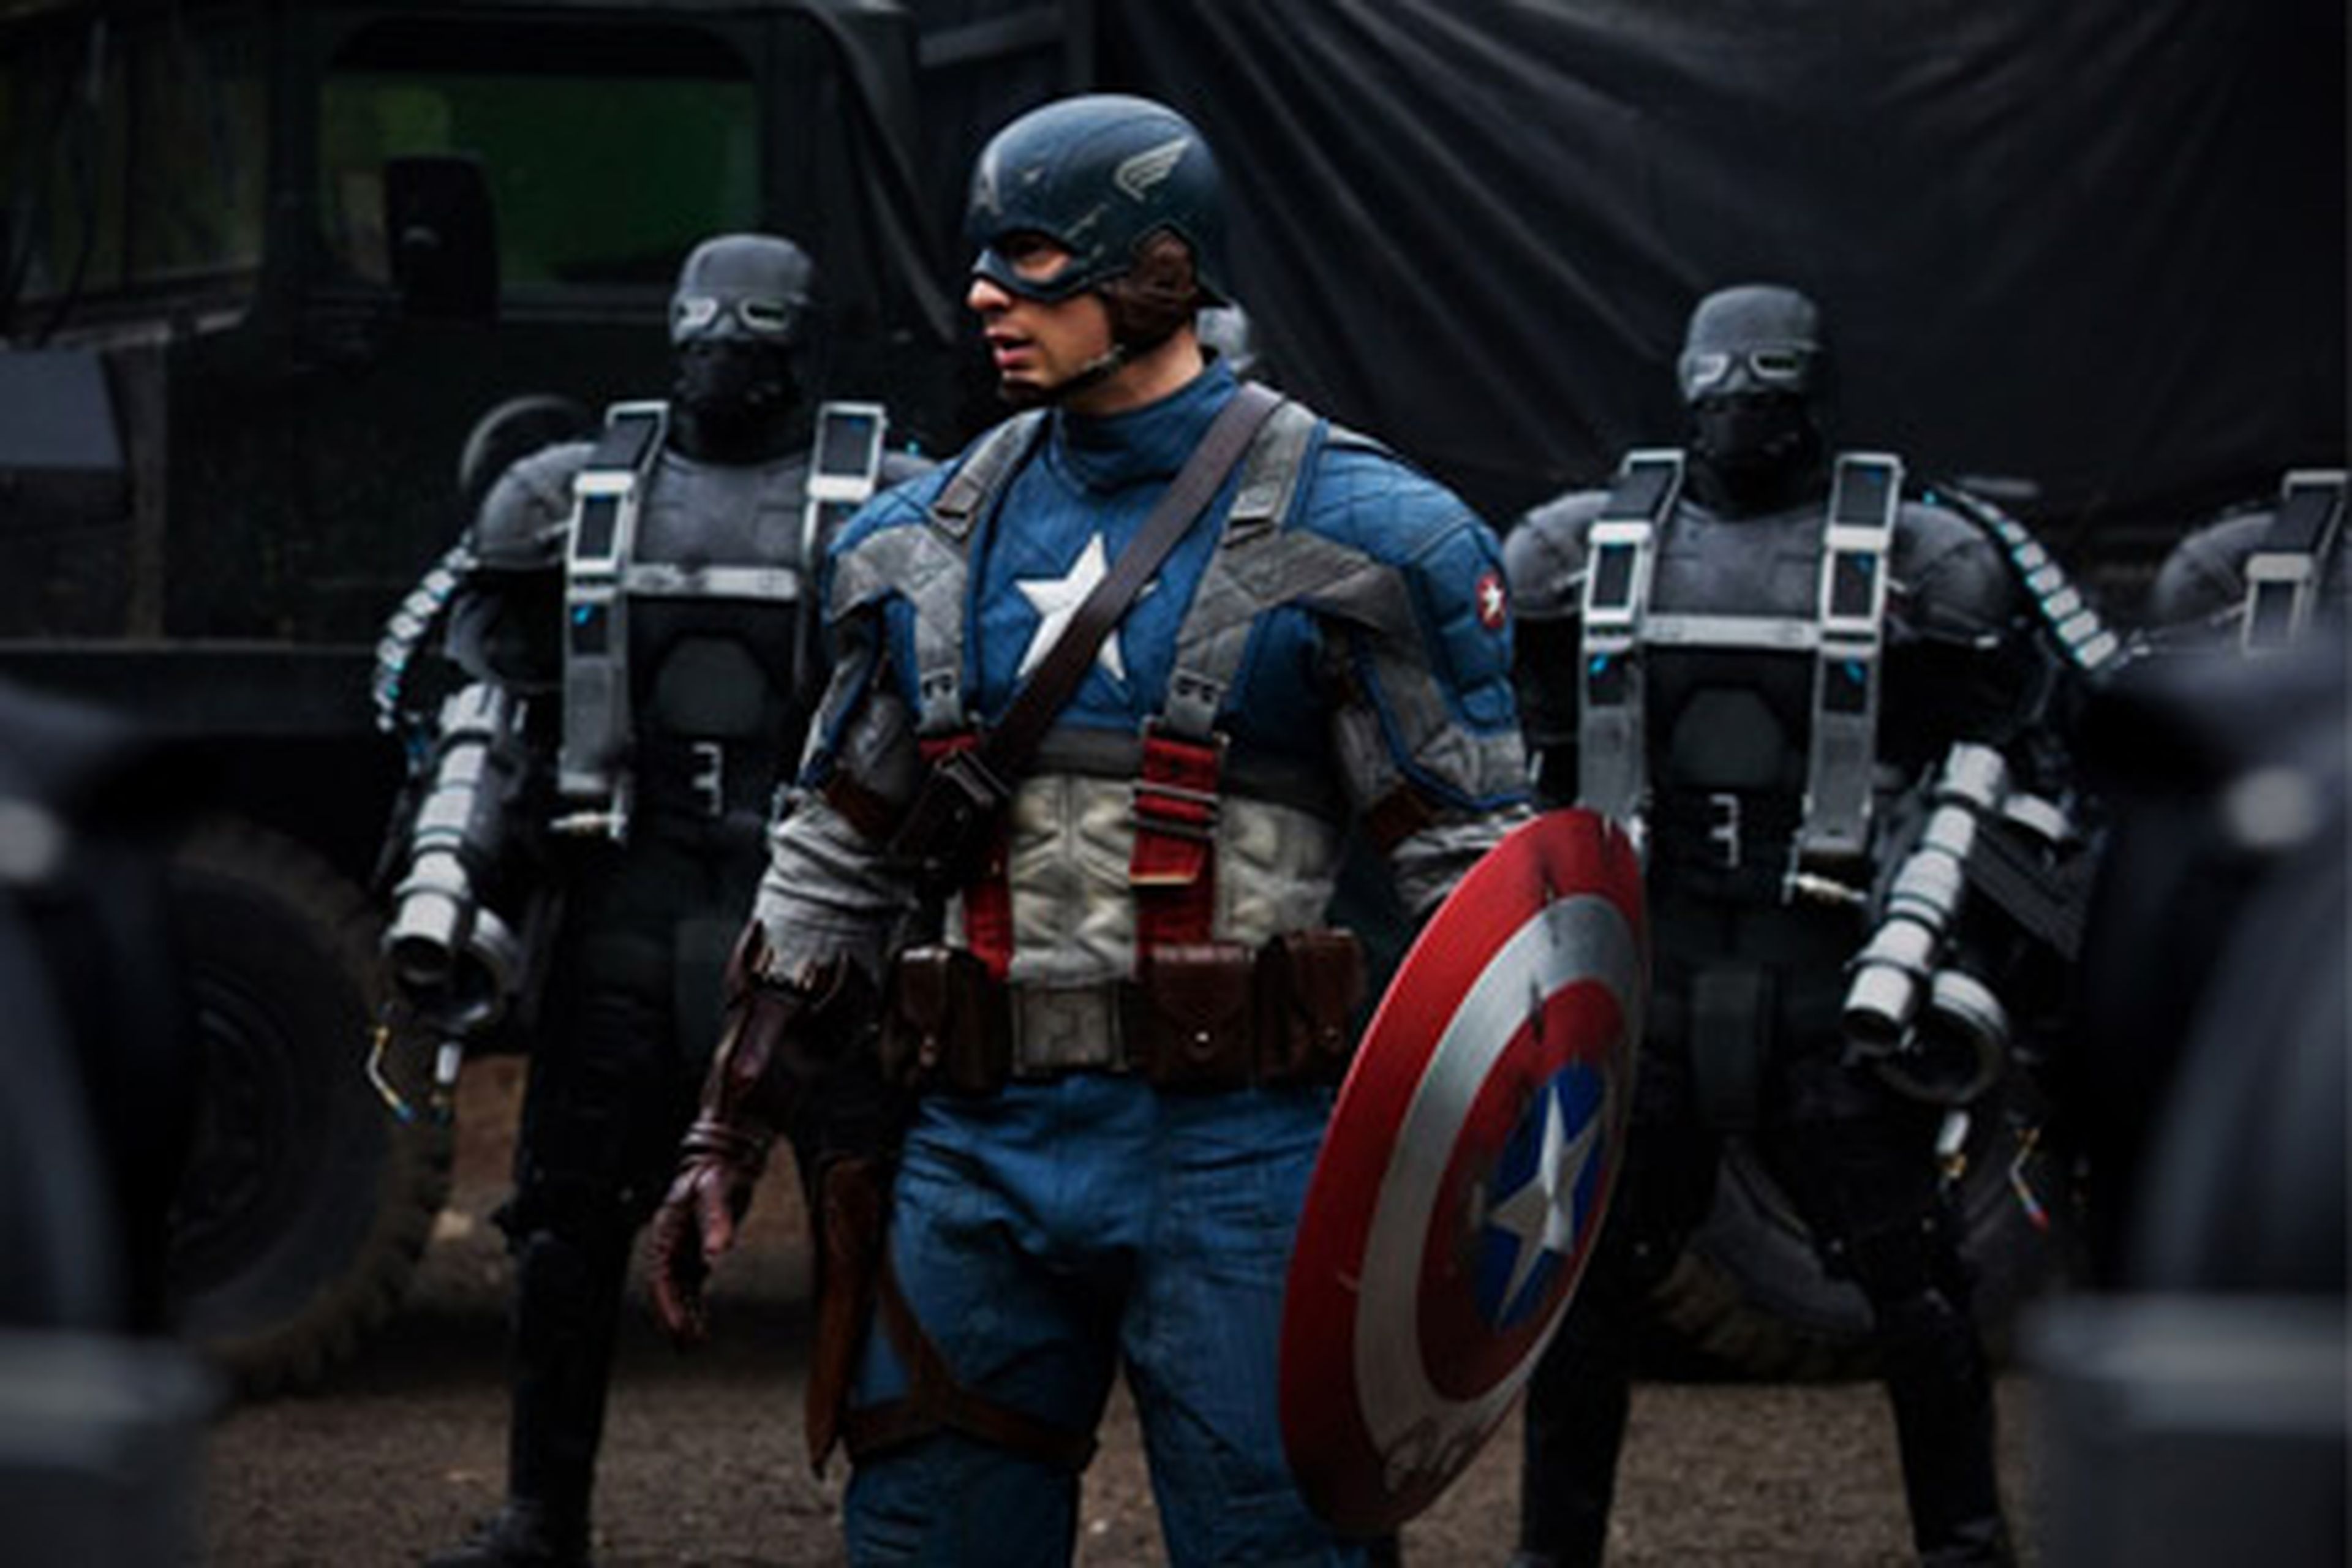 Cine de superhéroes: Crítica de Capitán América El primer vengador